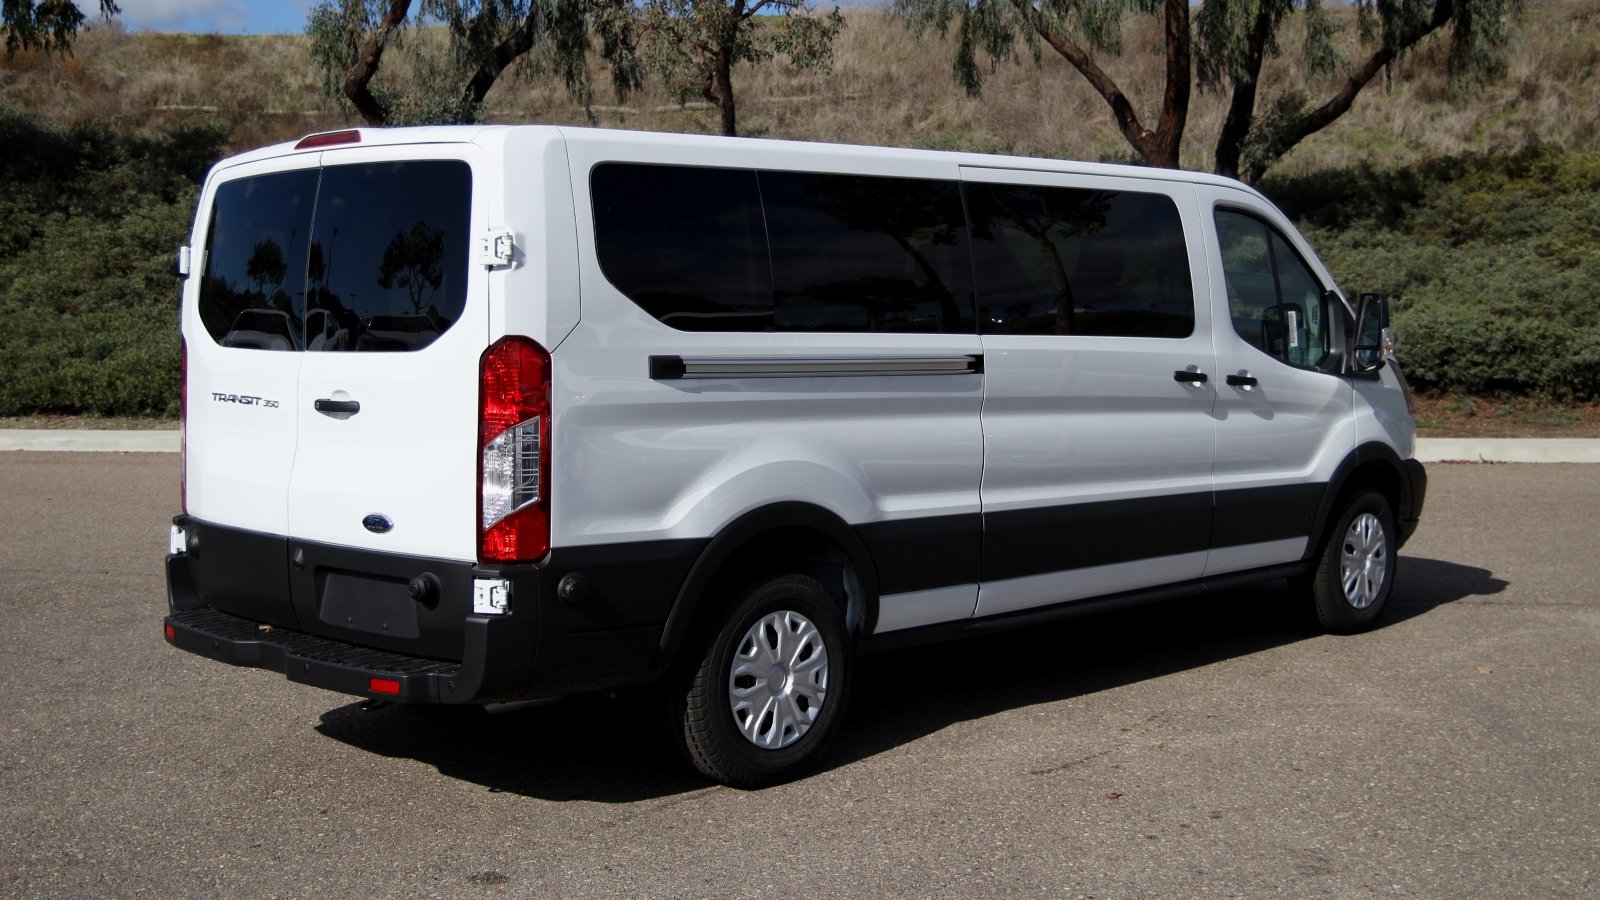 New 2019 Ford Transit 350 LR XL Passenger Van Fullsize Passenger Van